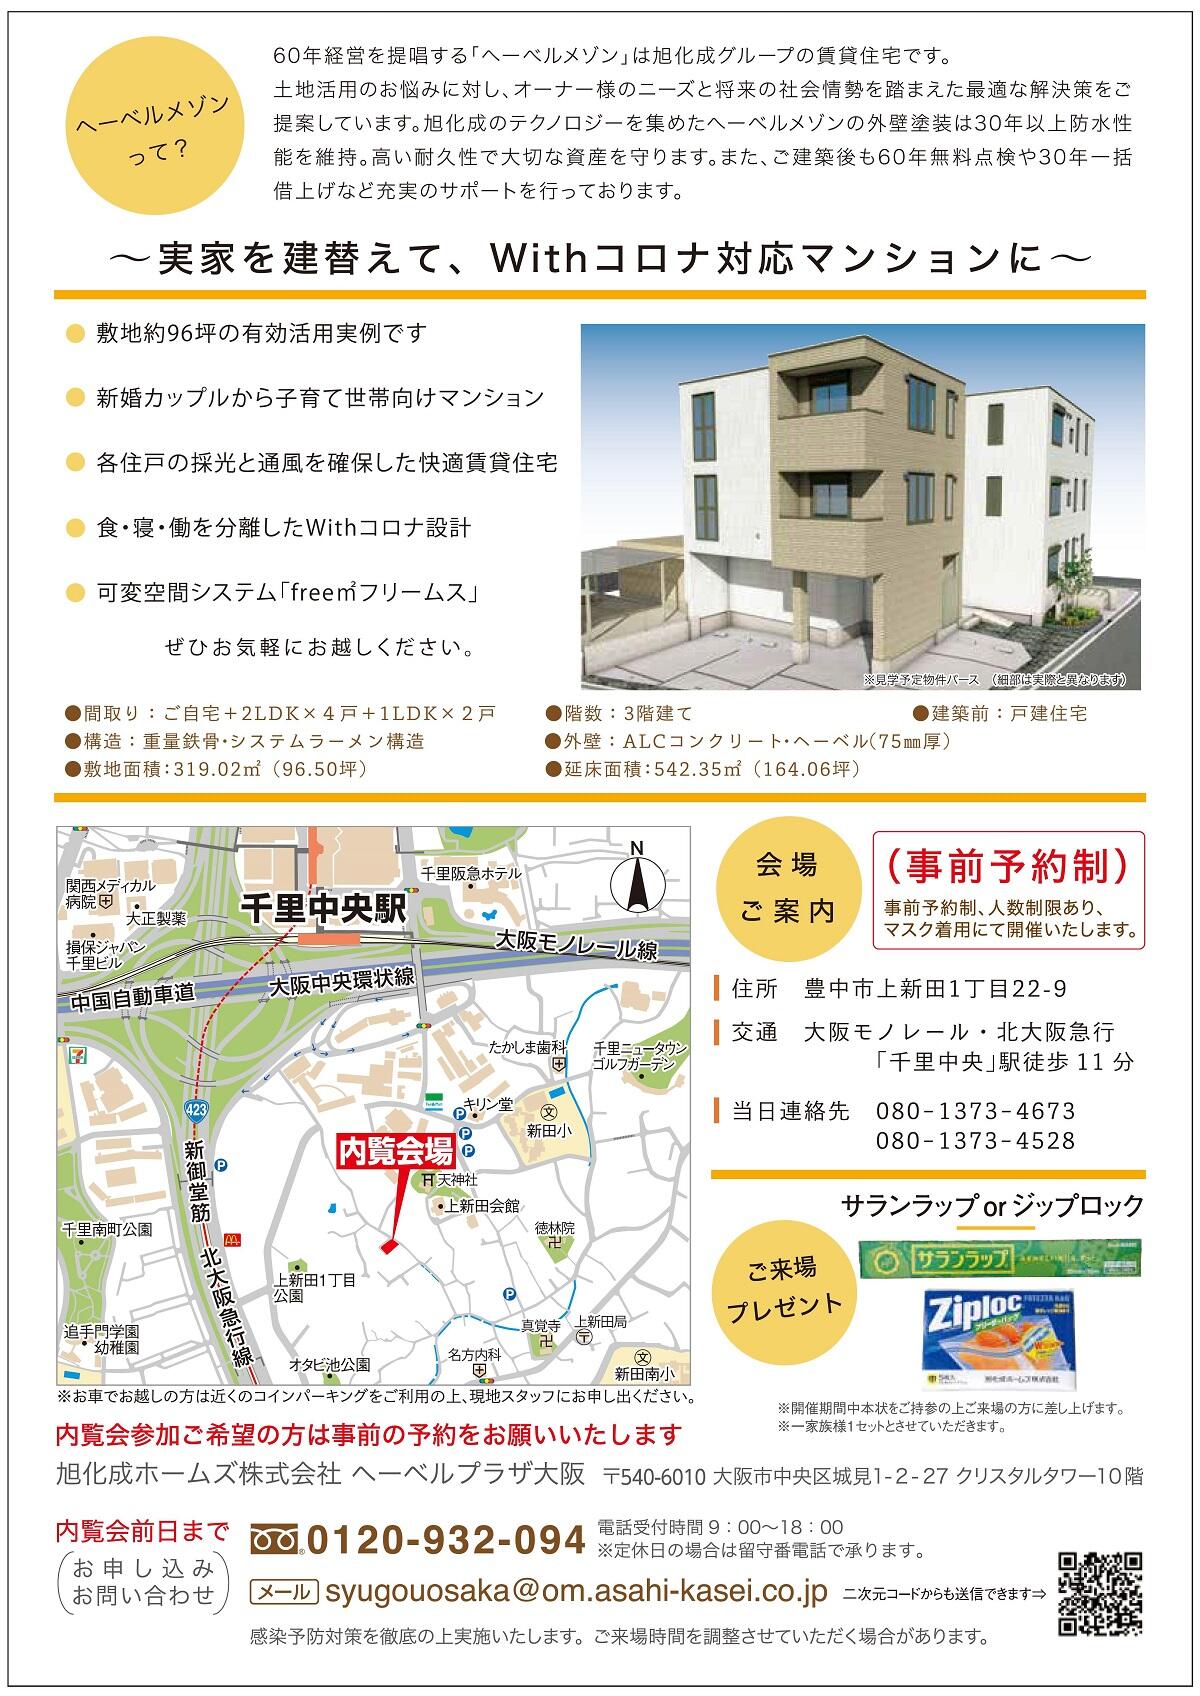 https://www.asahi-kasei.co.jp/maison/hebelplaza/blog/18/osaka/item/2021/20210628-3.jpg